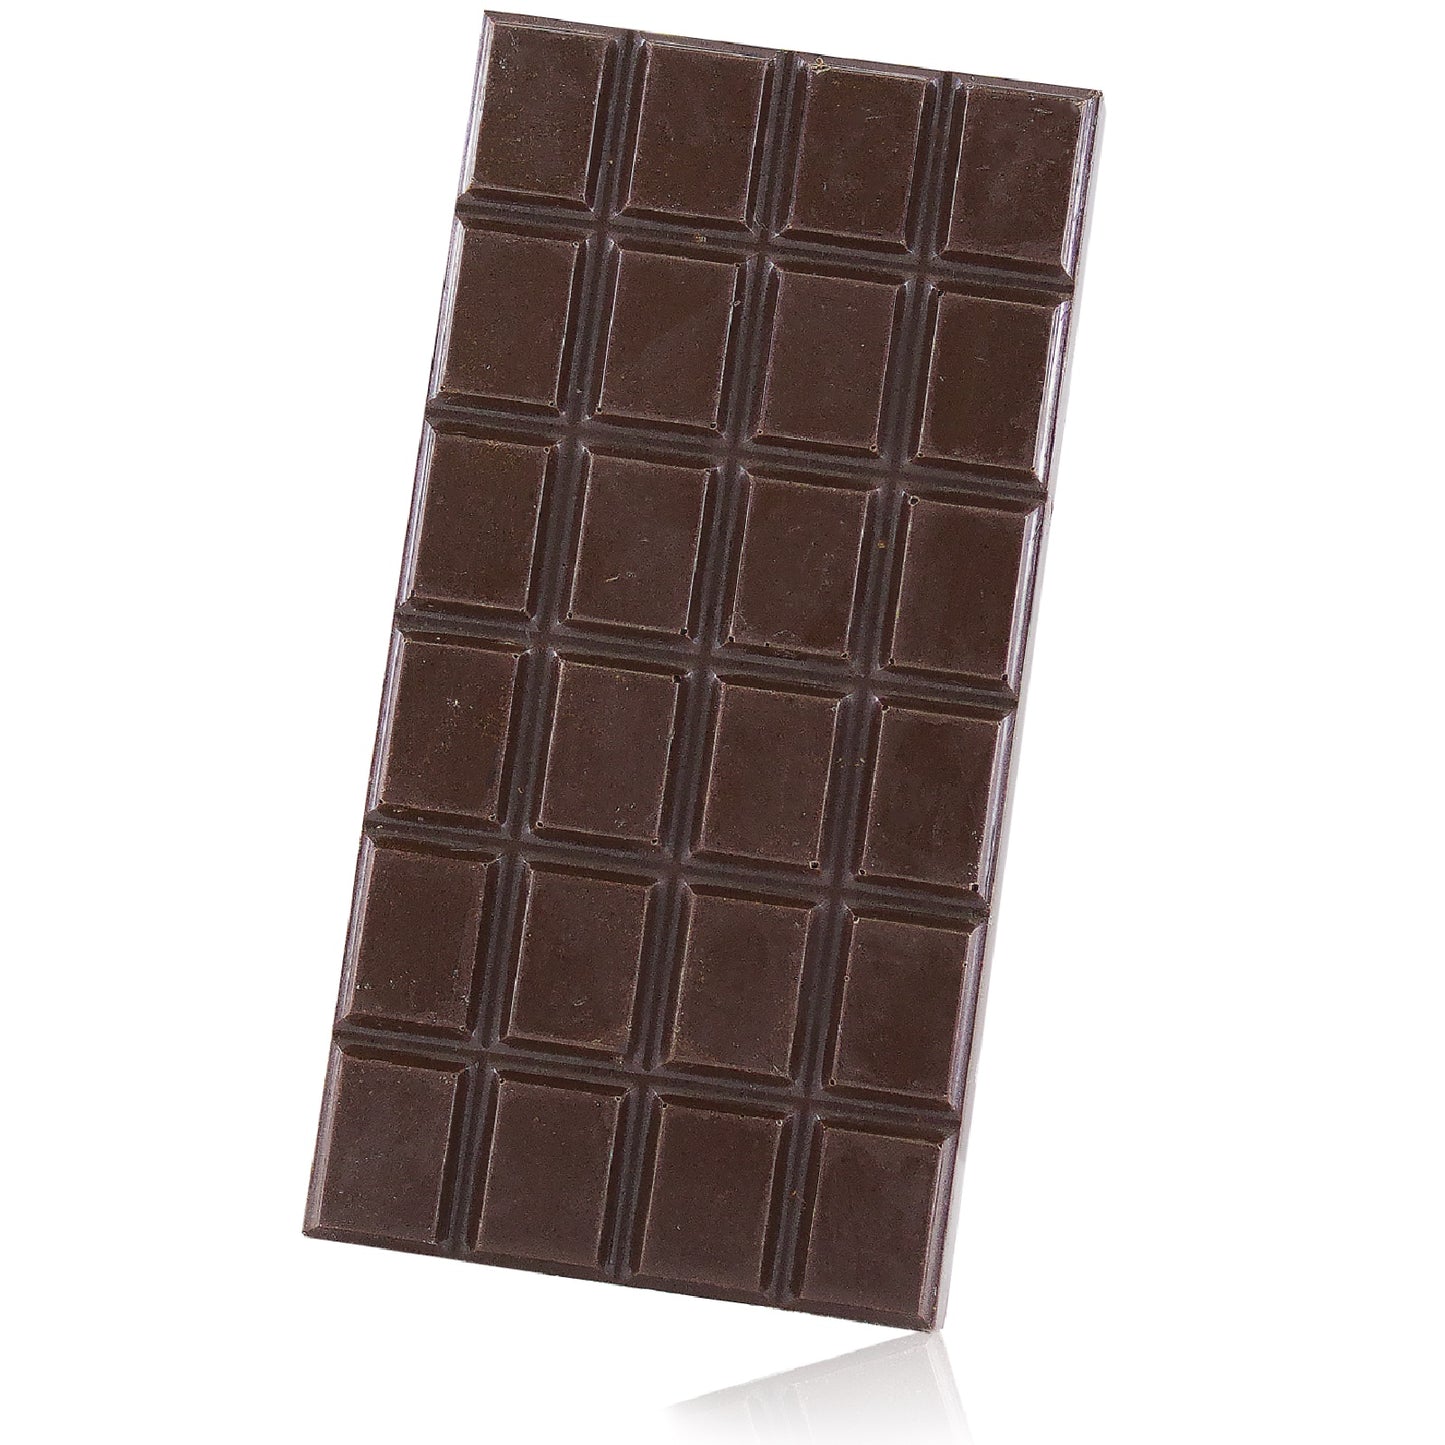 Tavoletta di Cioccolato extra fondente al Cedro - 70%